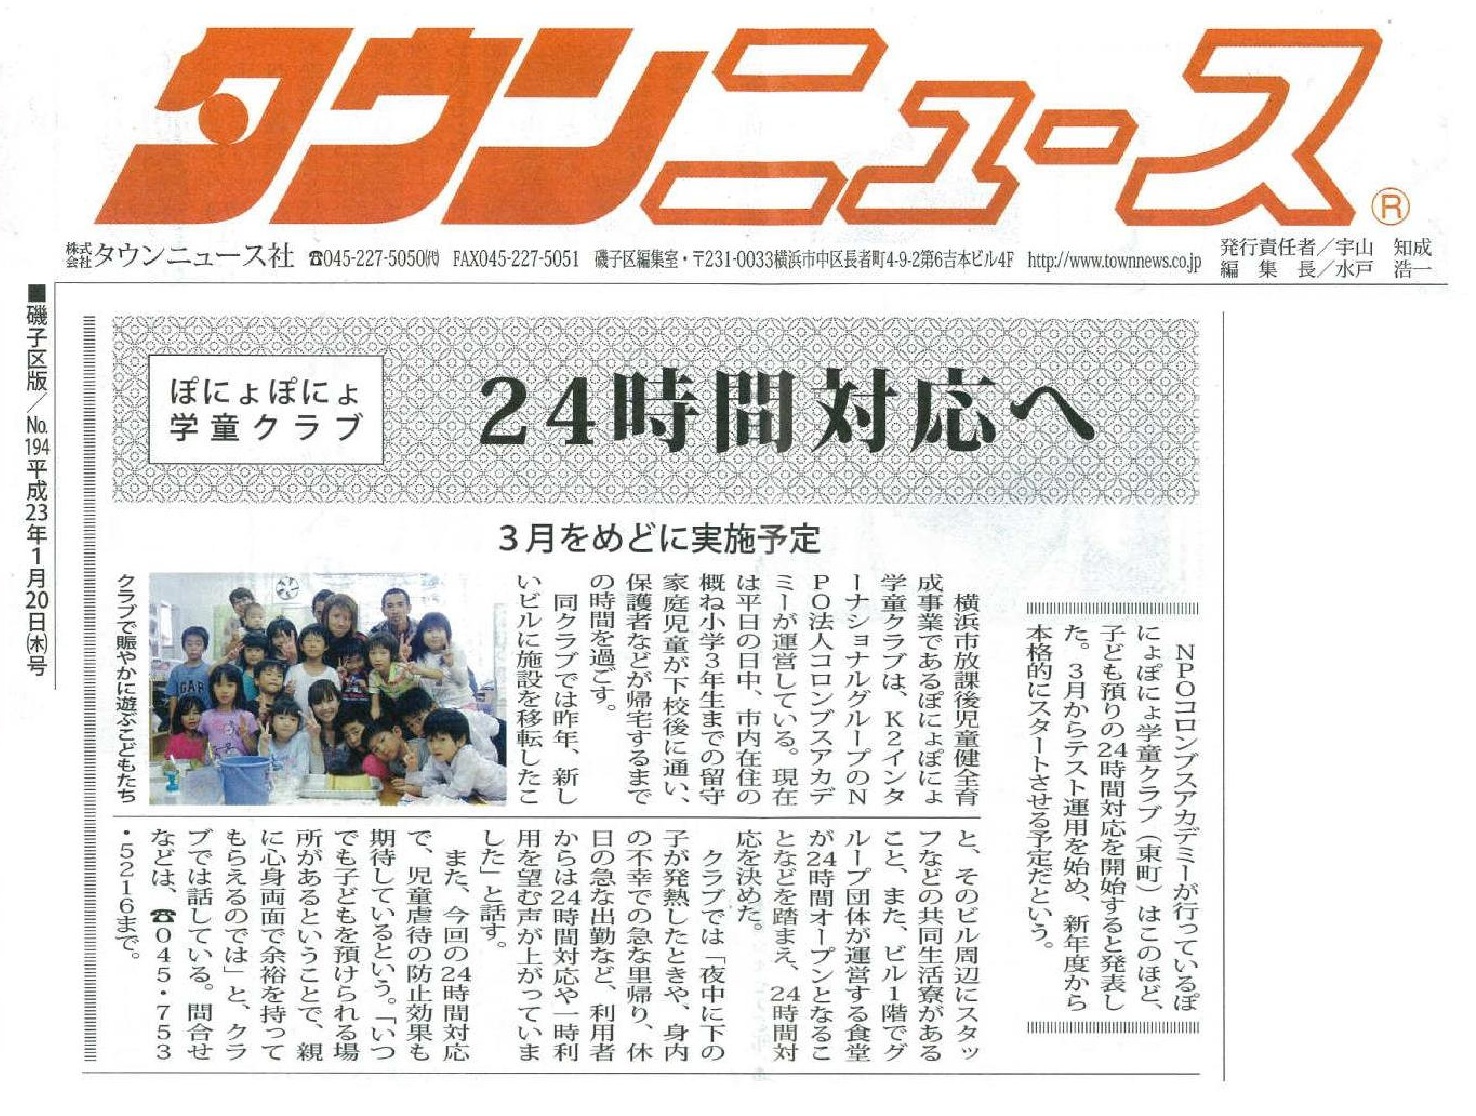 タウンニュース 2011年1月20日　ぽにょぽにょ学童クラブ 24時間対応へ